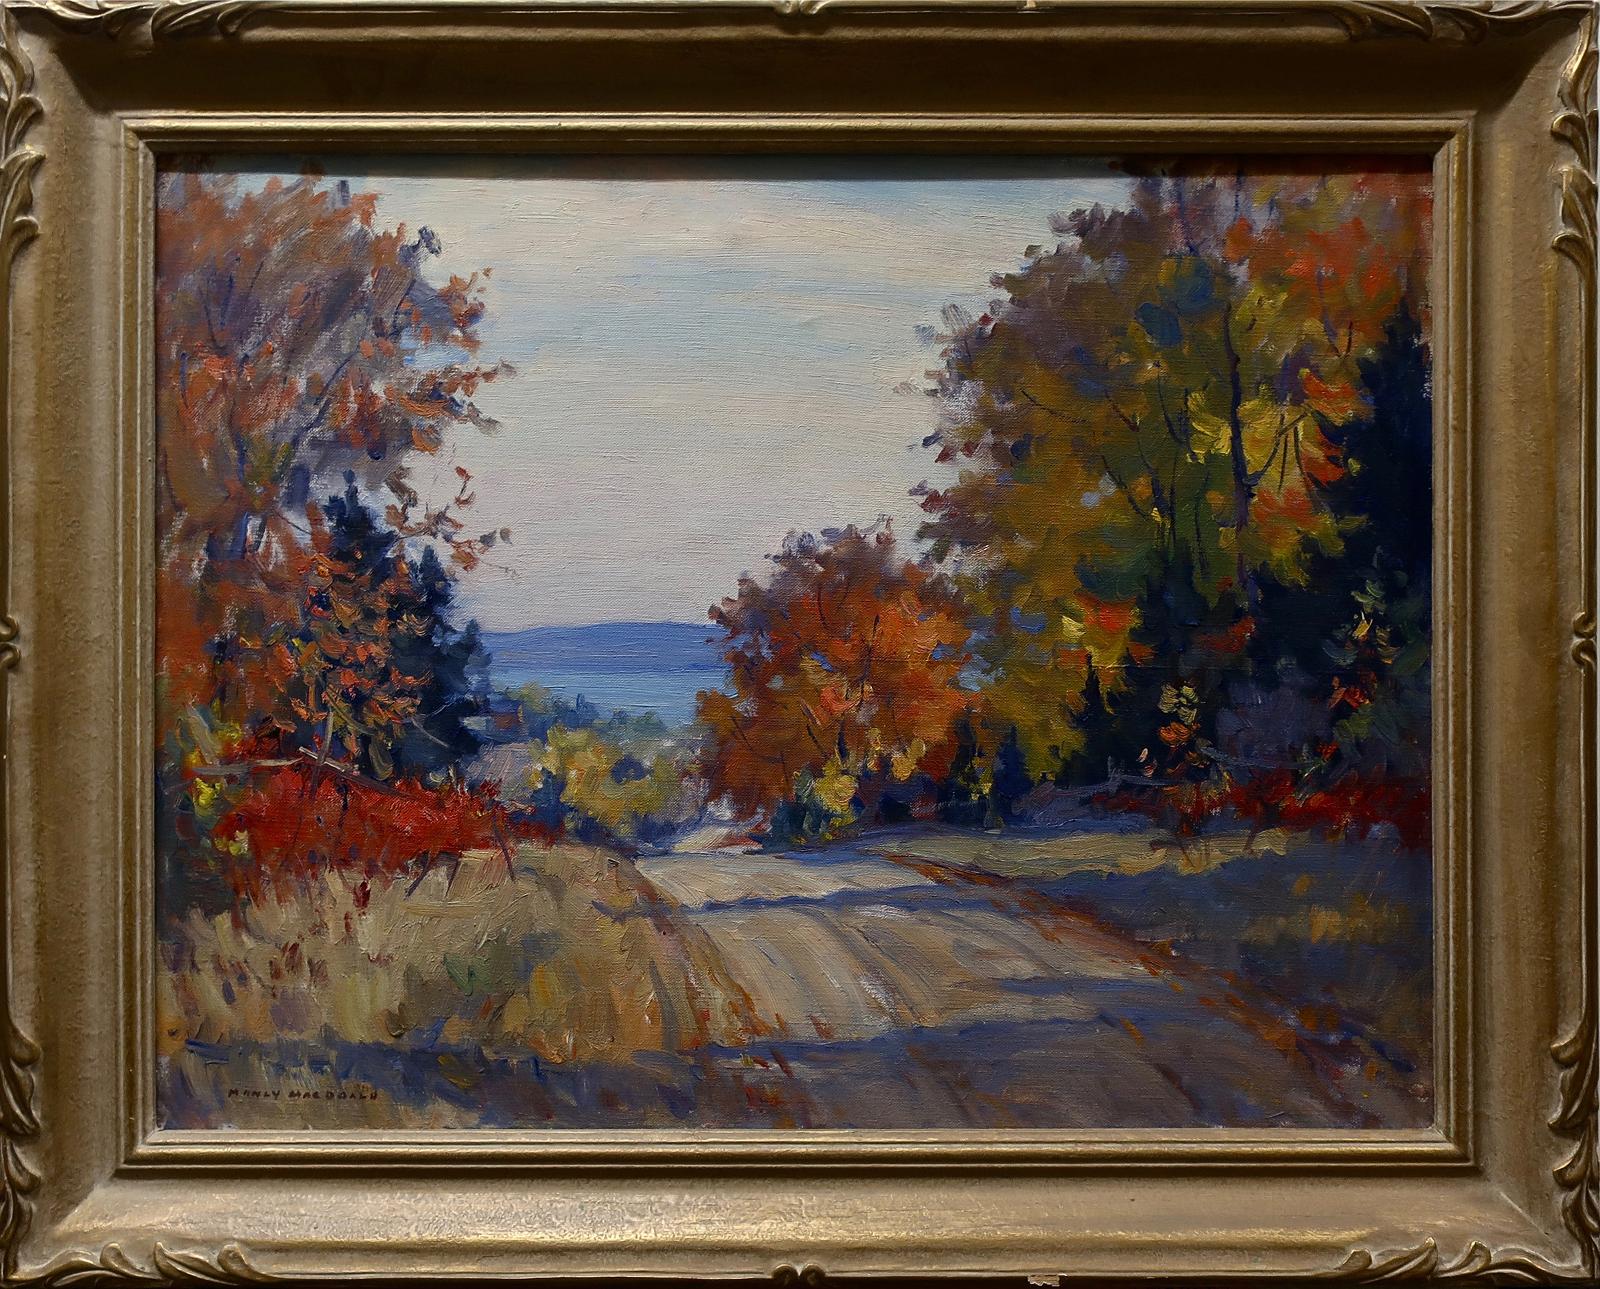 Manly Edward MacDonald (1889-1971) - Untitled (Road To Lake - Autumn)